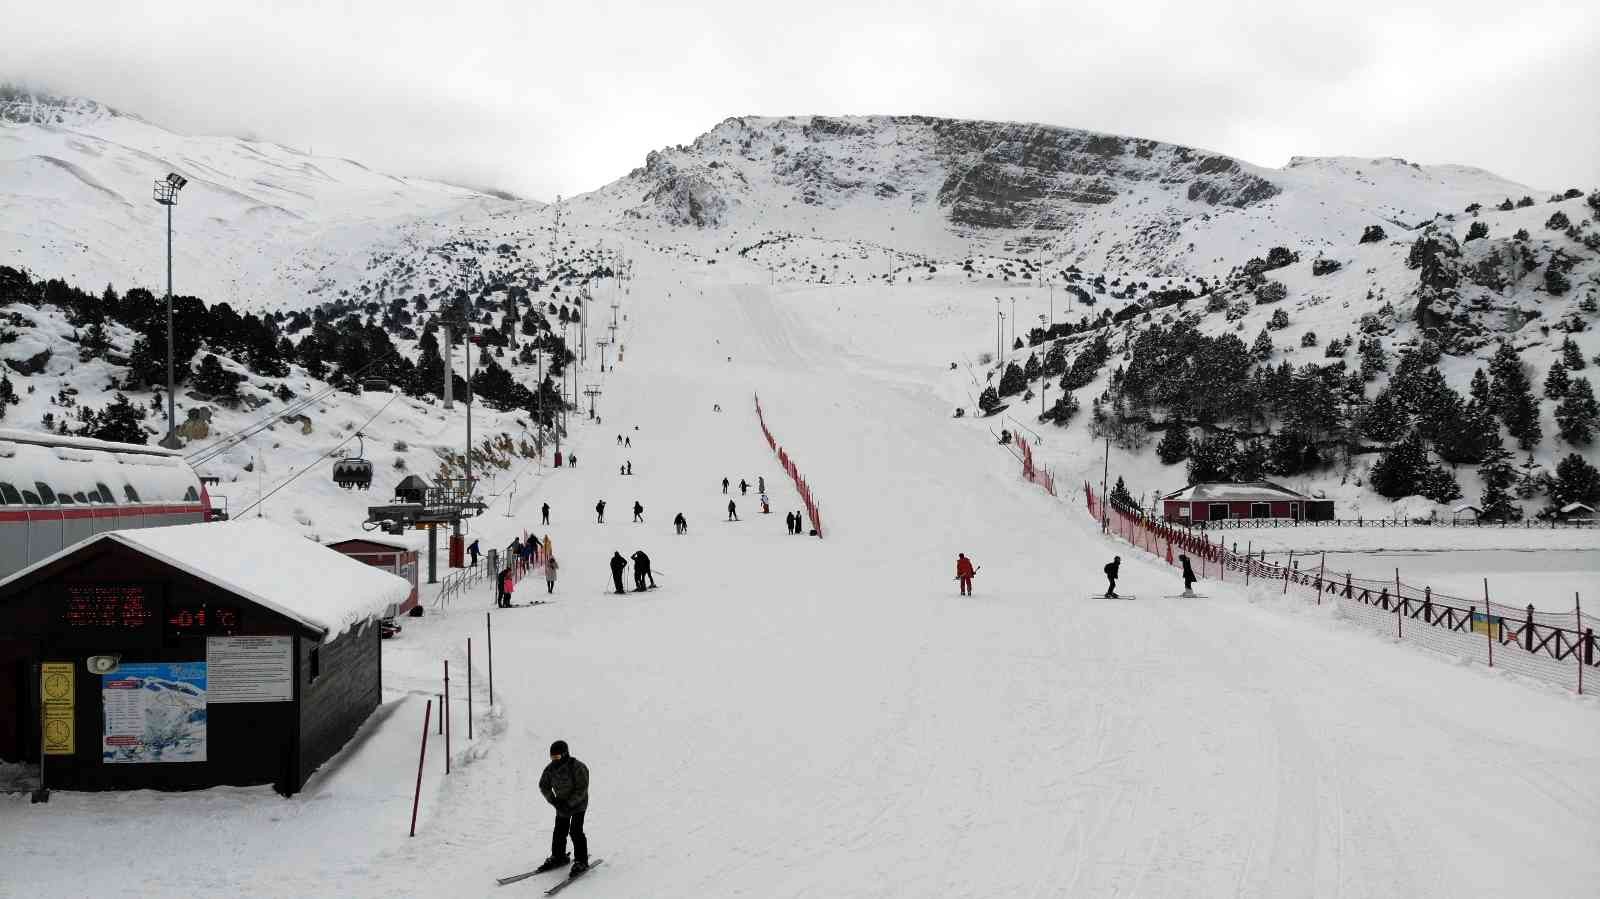 Göl manzaralı Ergan Dağı’nda kayak sezonu başladı #erzincan